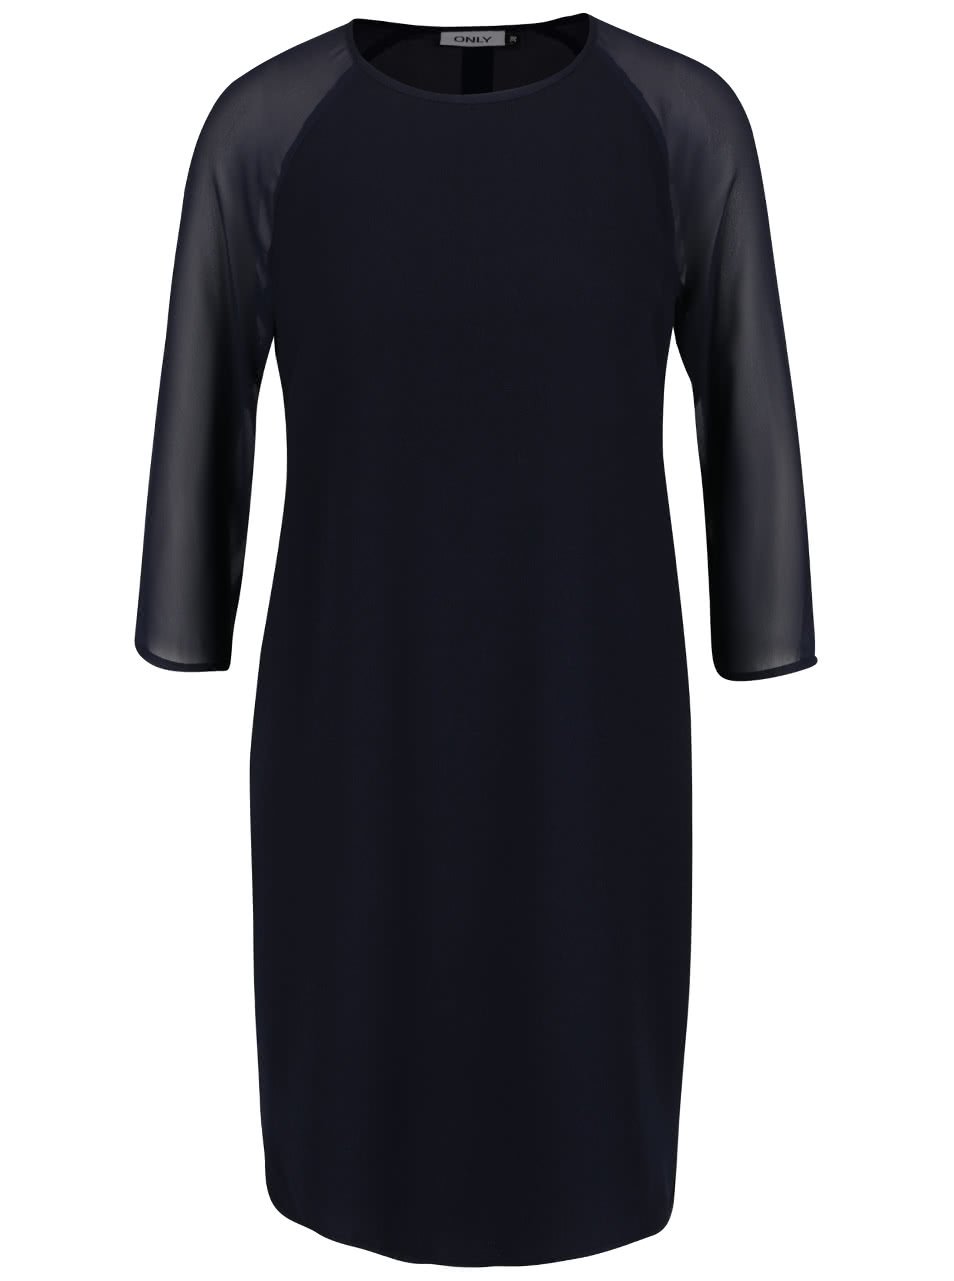 Tmavě modré volnější šaty s průsvitnými 3/4 rukávy ONLY Turner